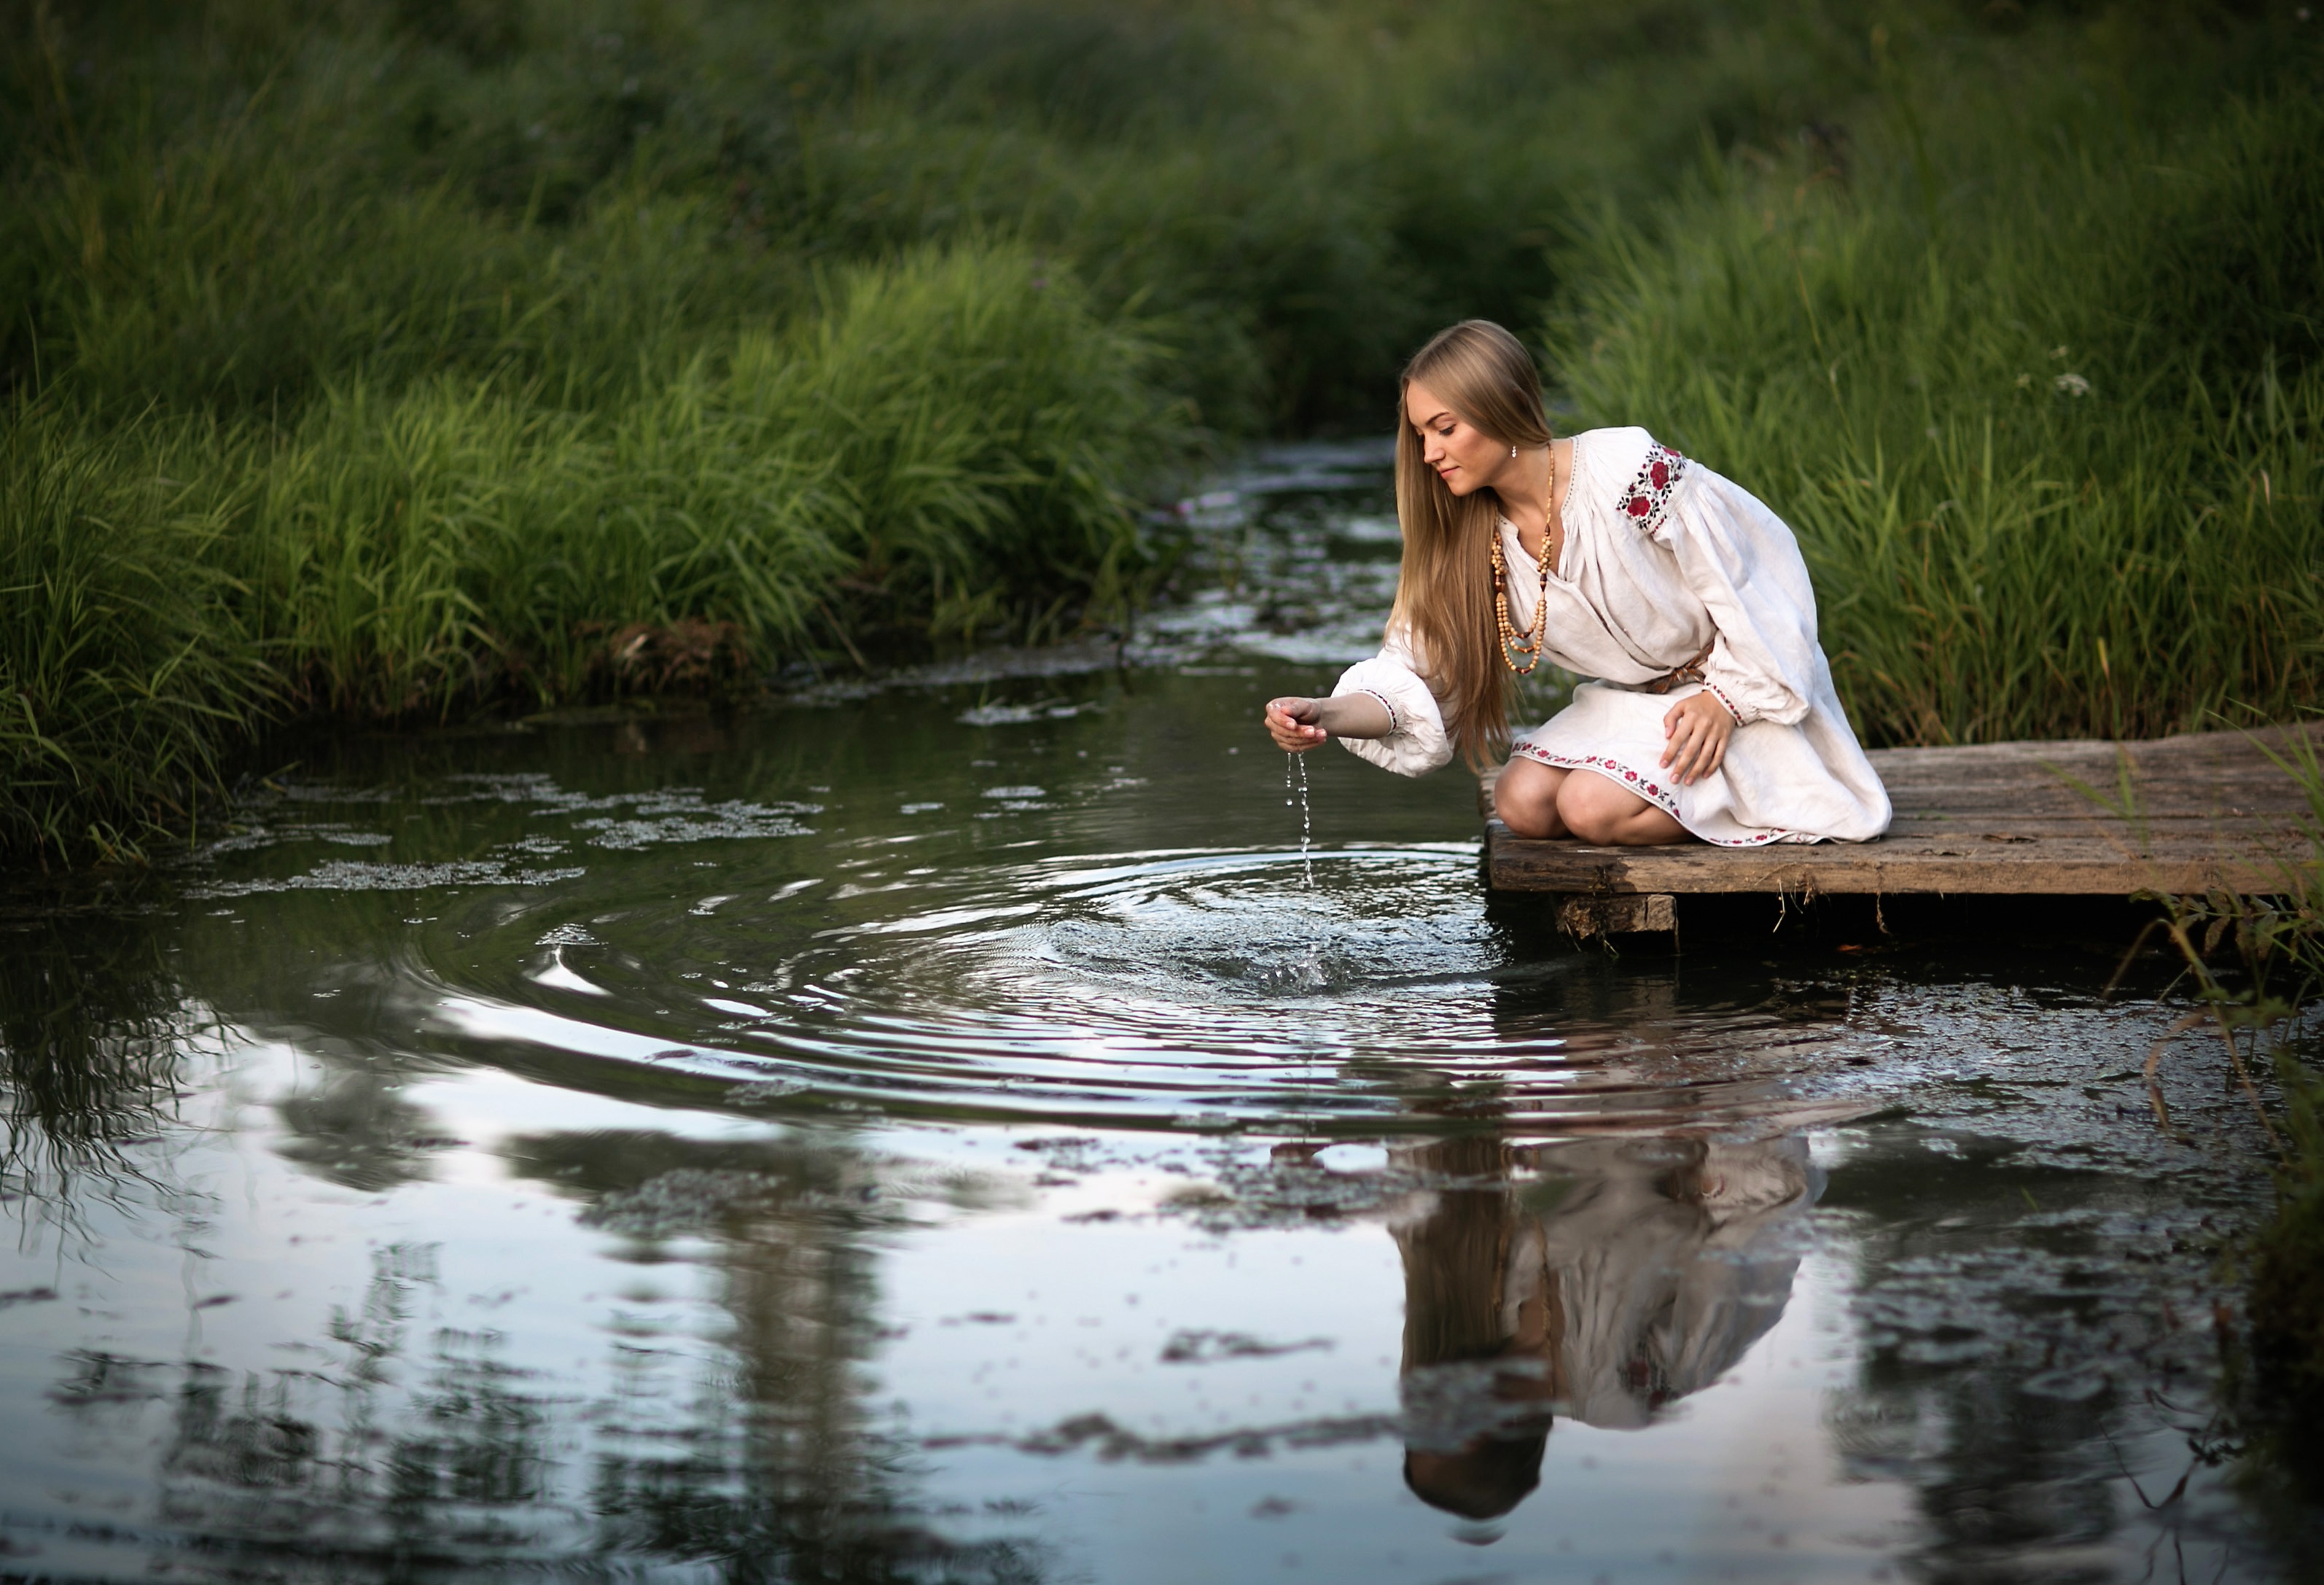 Будут проводить время в воде. Фотосессия в воде. Девушка у пруда. Девушка в воде. Женщина у реки.